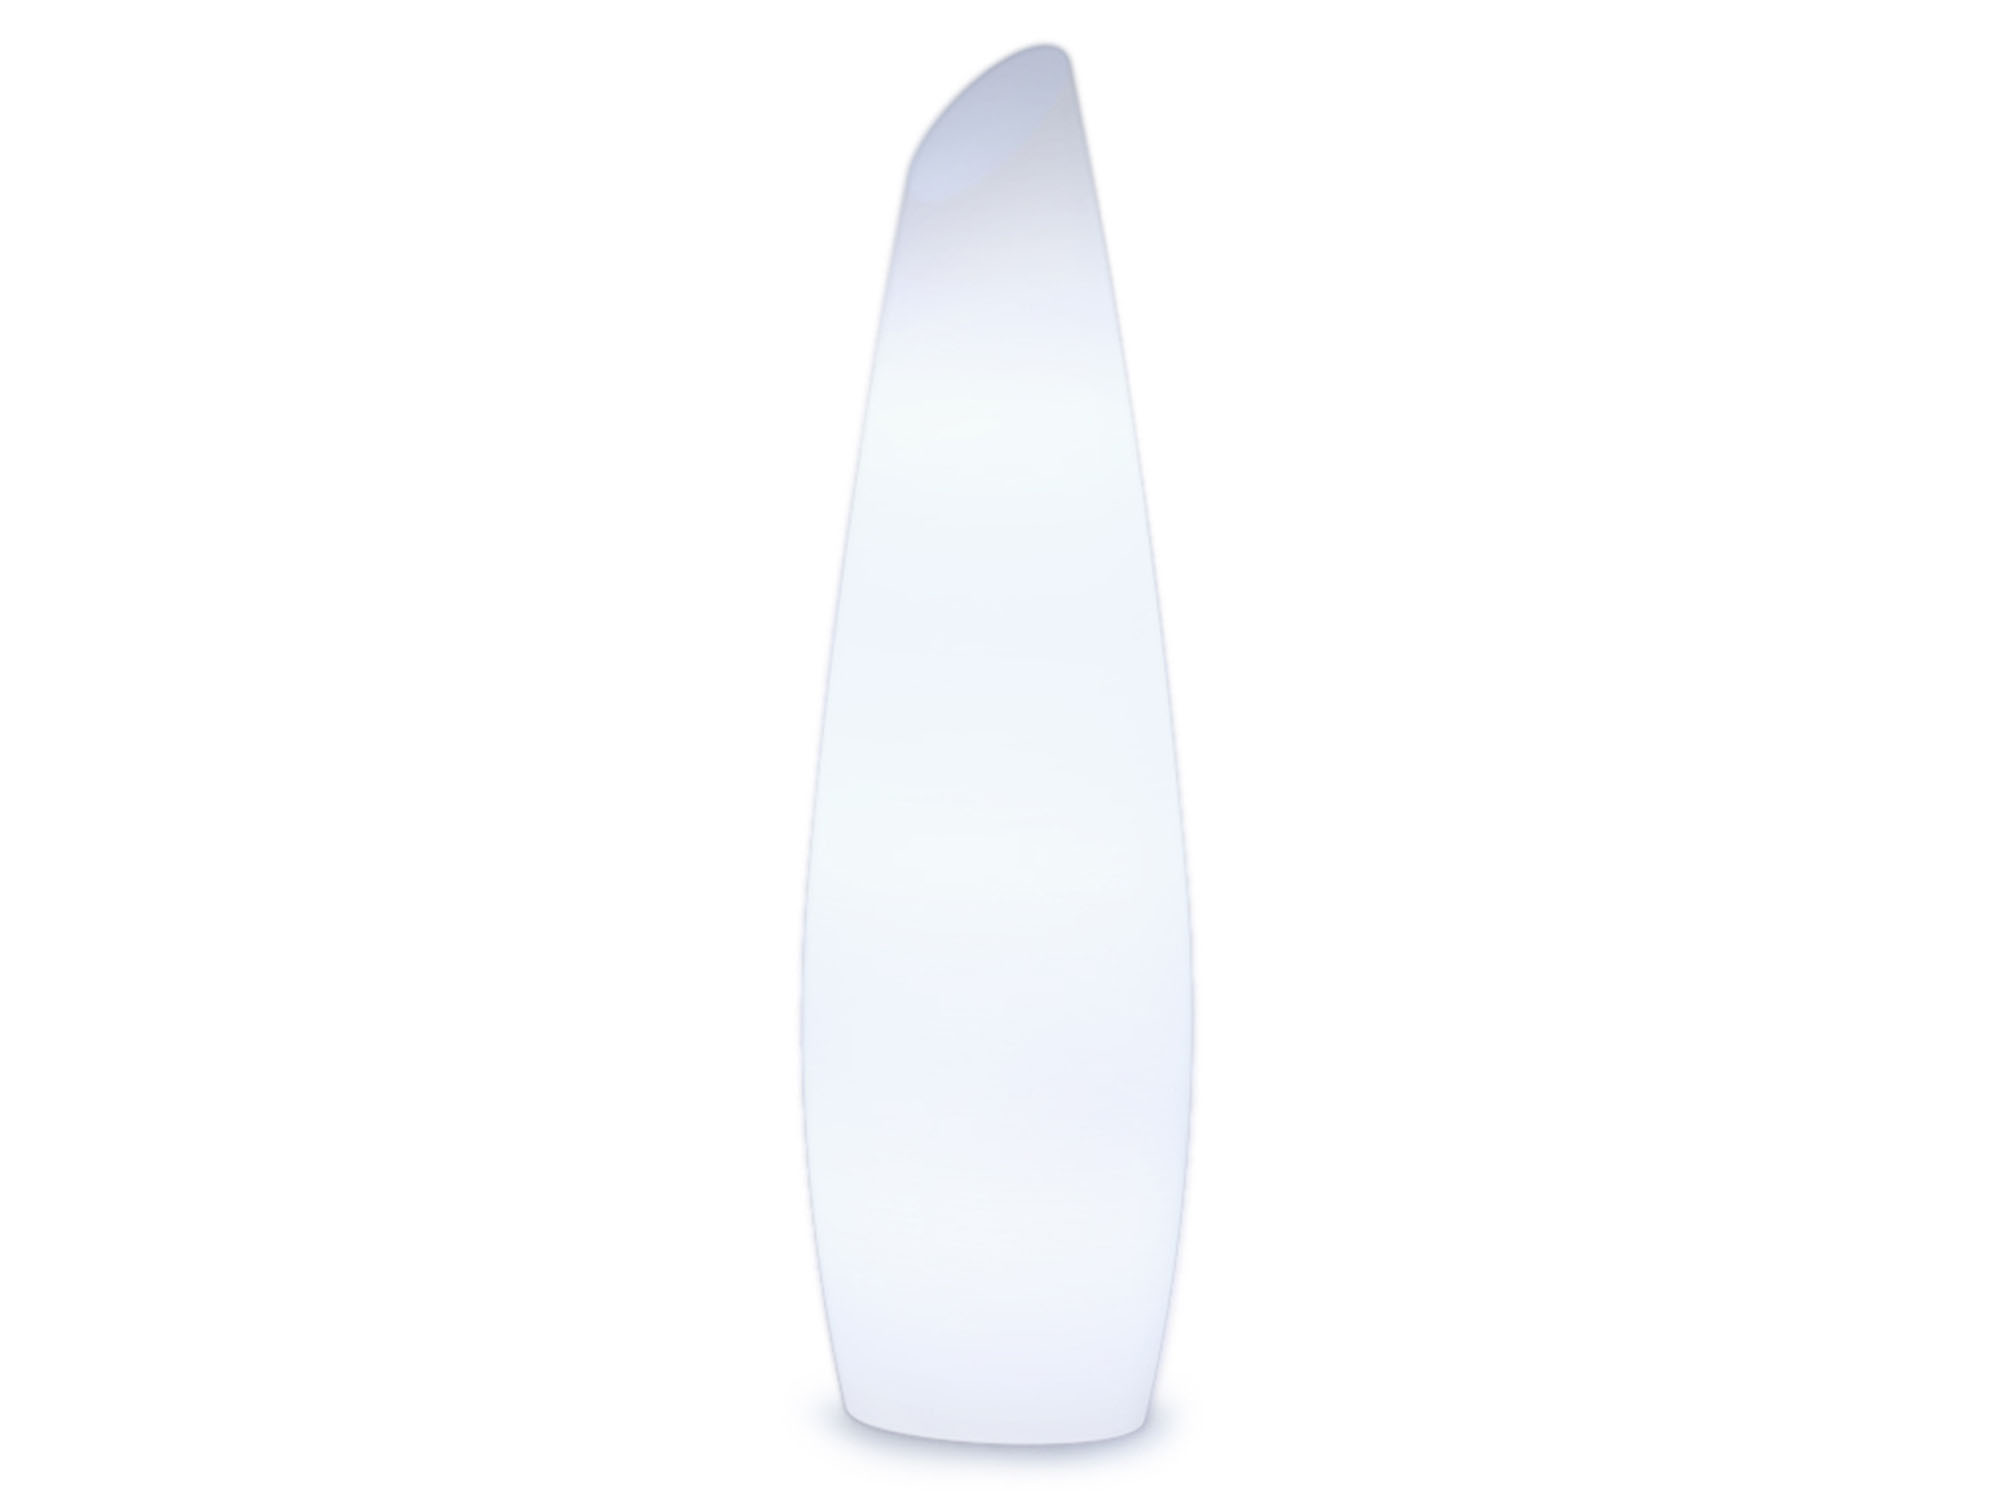 NewGarden Fredo 140cm buitenverlichting staande lamp wit kunststof